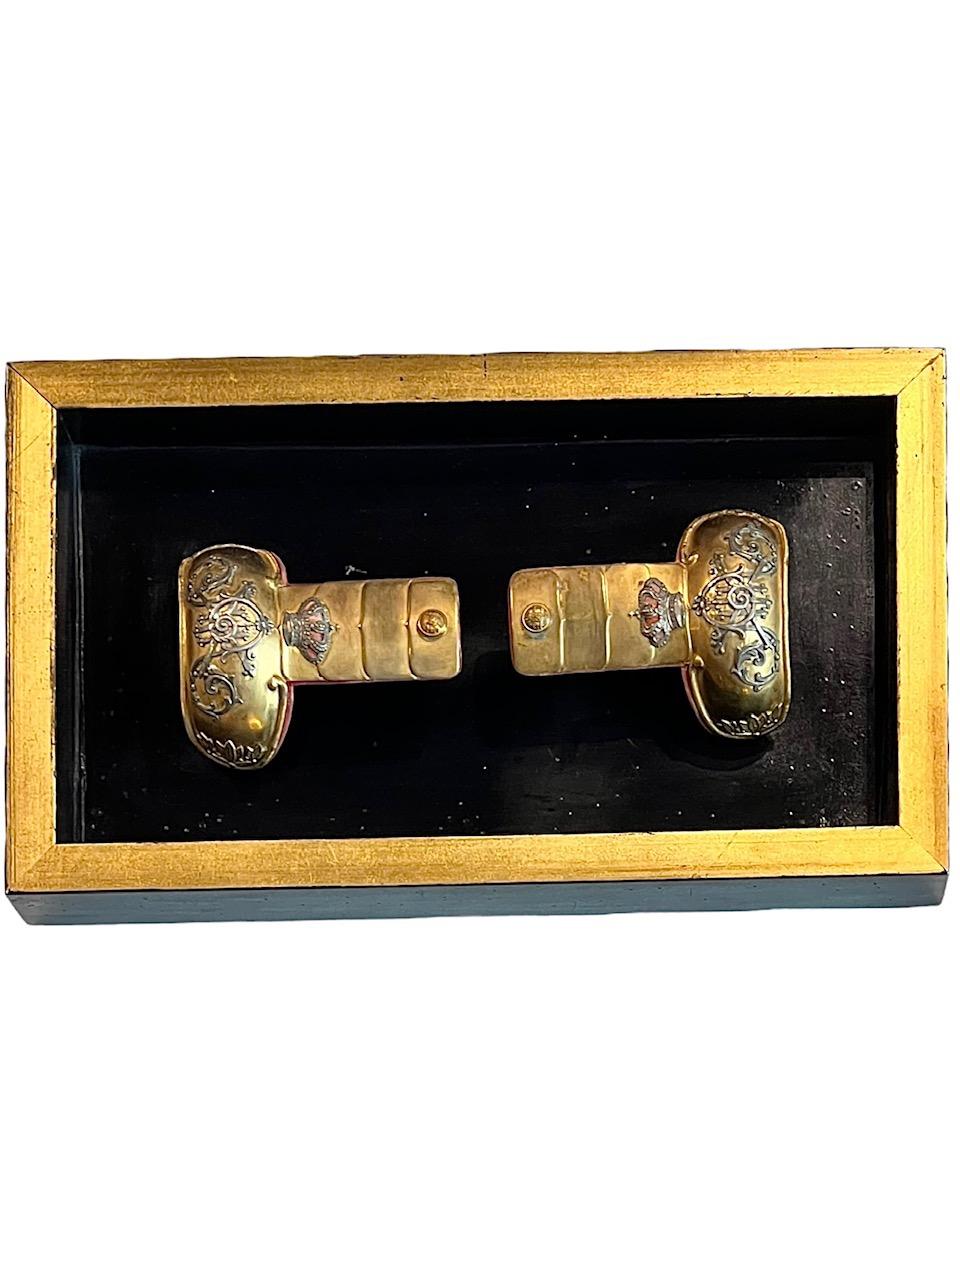 Paire d'épaulettes militaires espagnoles du début du XIXe siècle. Elles sont fabriquées en laiton doré ciselé et doublées d'un velours de couleur marron. La paire est ornée de feuilles de laurier dorées et de boutons à crête complexes. Il est orné